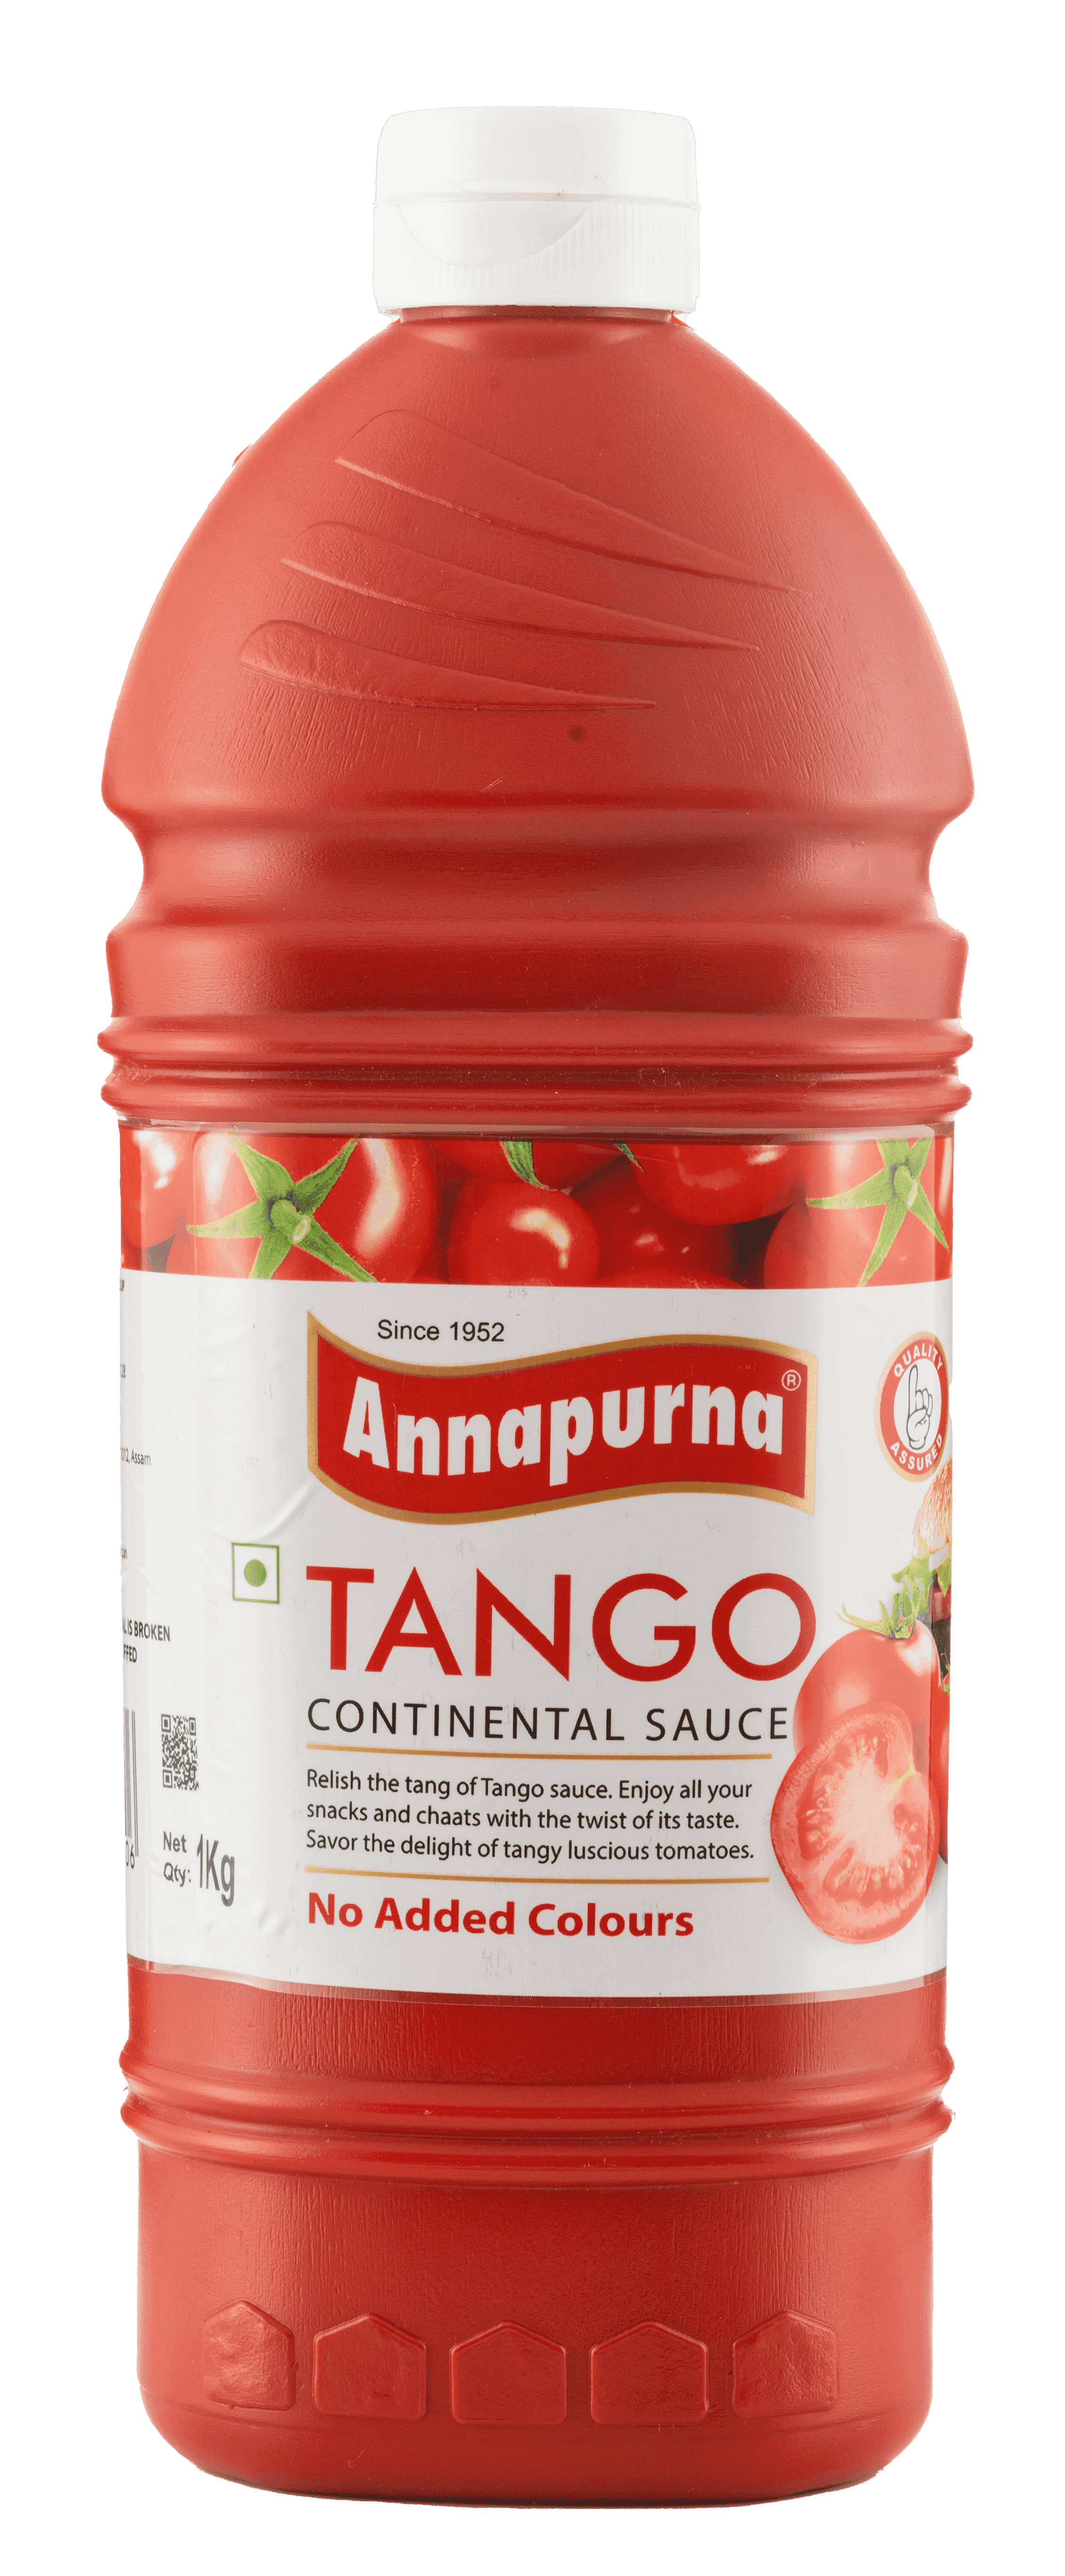 Tango Continental Sauce